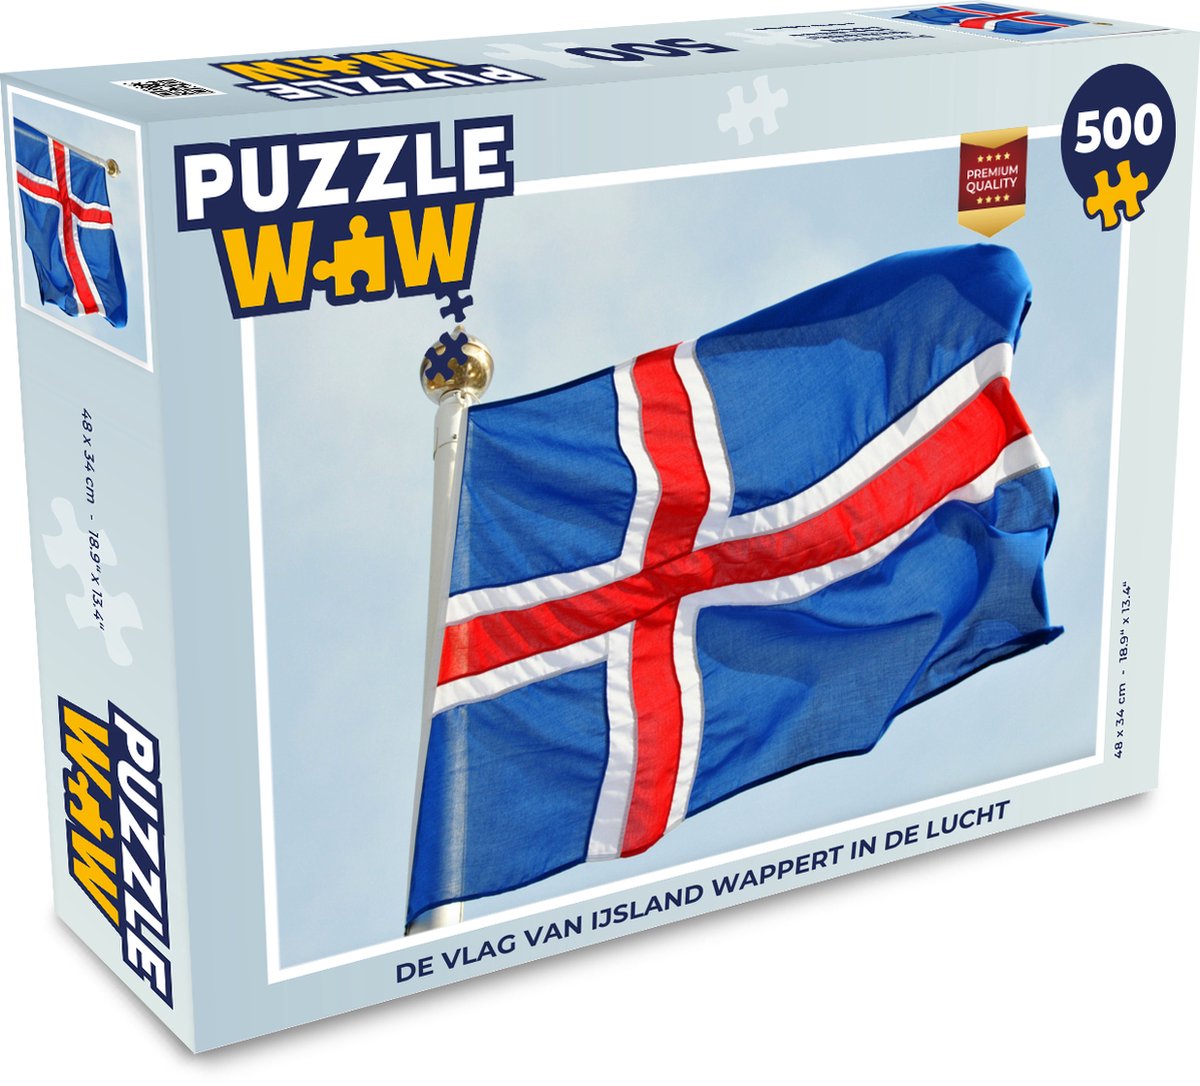 Afbeelding van product Puzzel 500 stukjes Vlag IJsland - De vlag van IJsland wappert in de lucht - PuzzleWow heeft +100000 puzzels